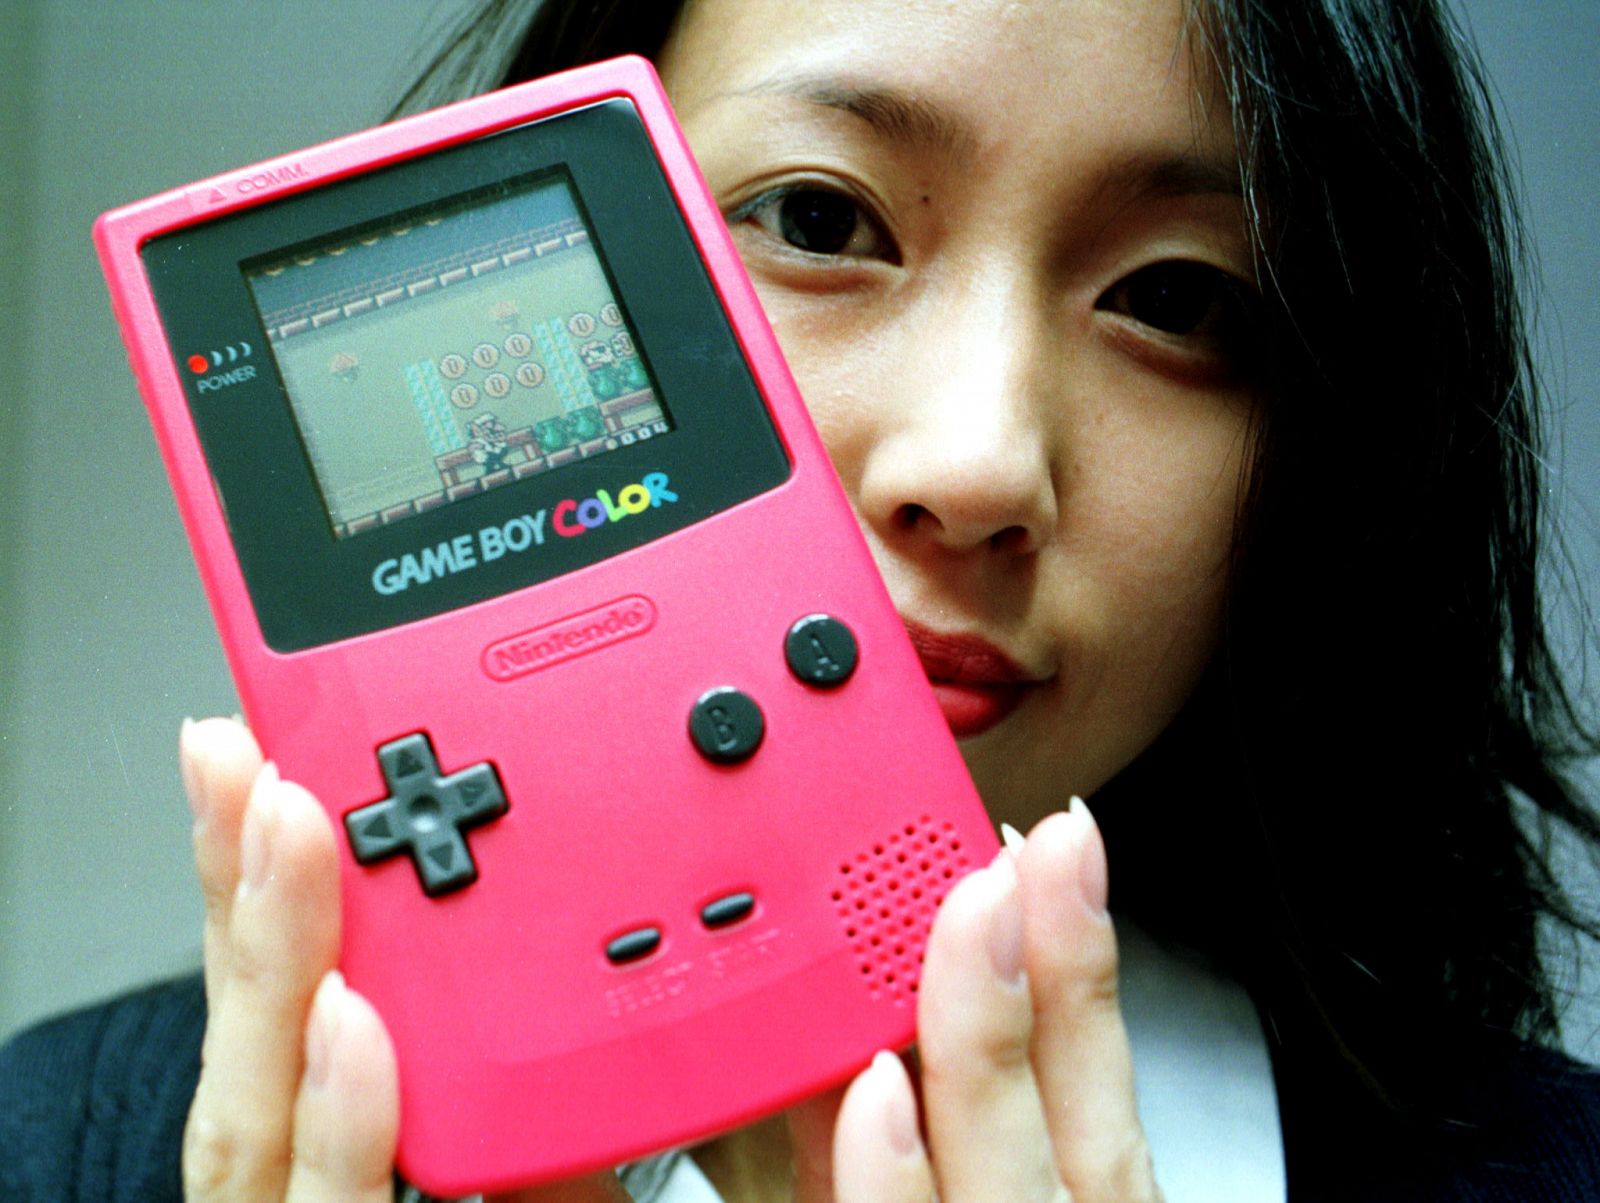 La primera evolución de la Game Boy, el modelo Colour